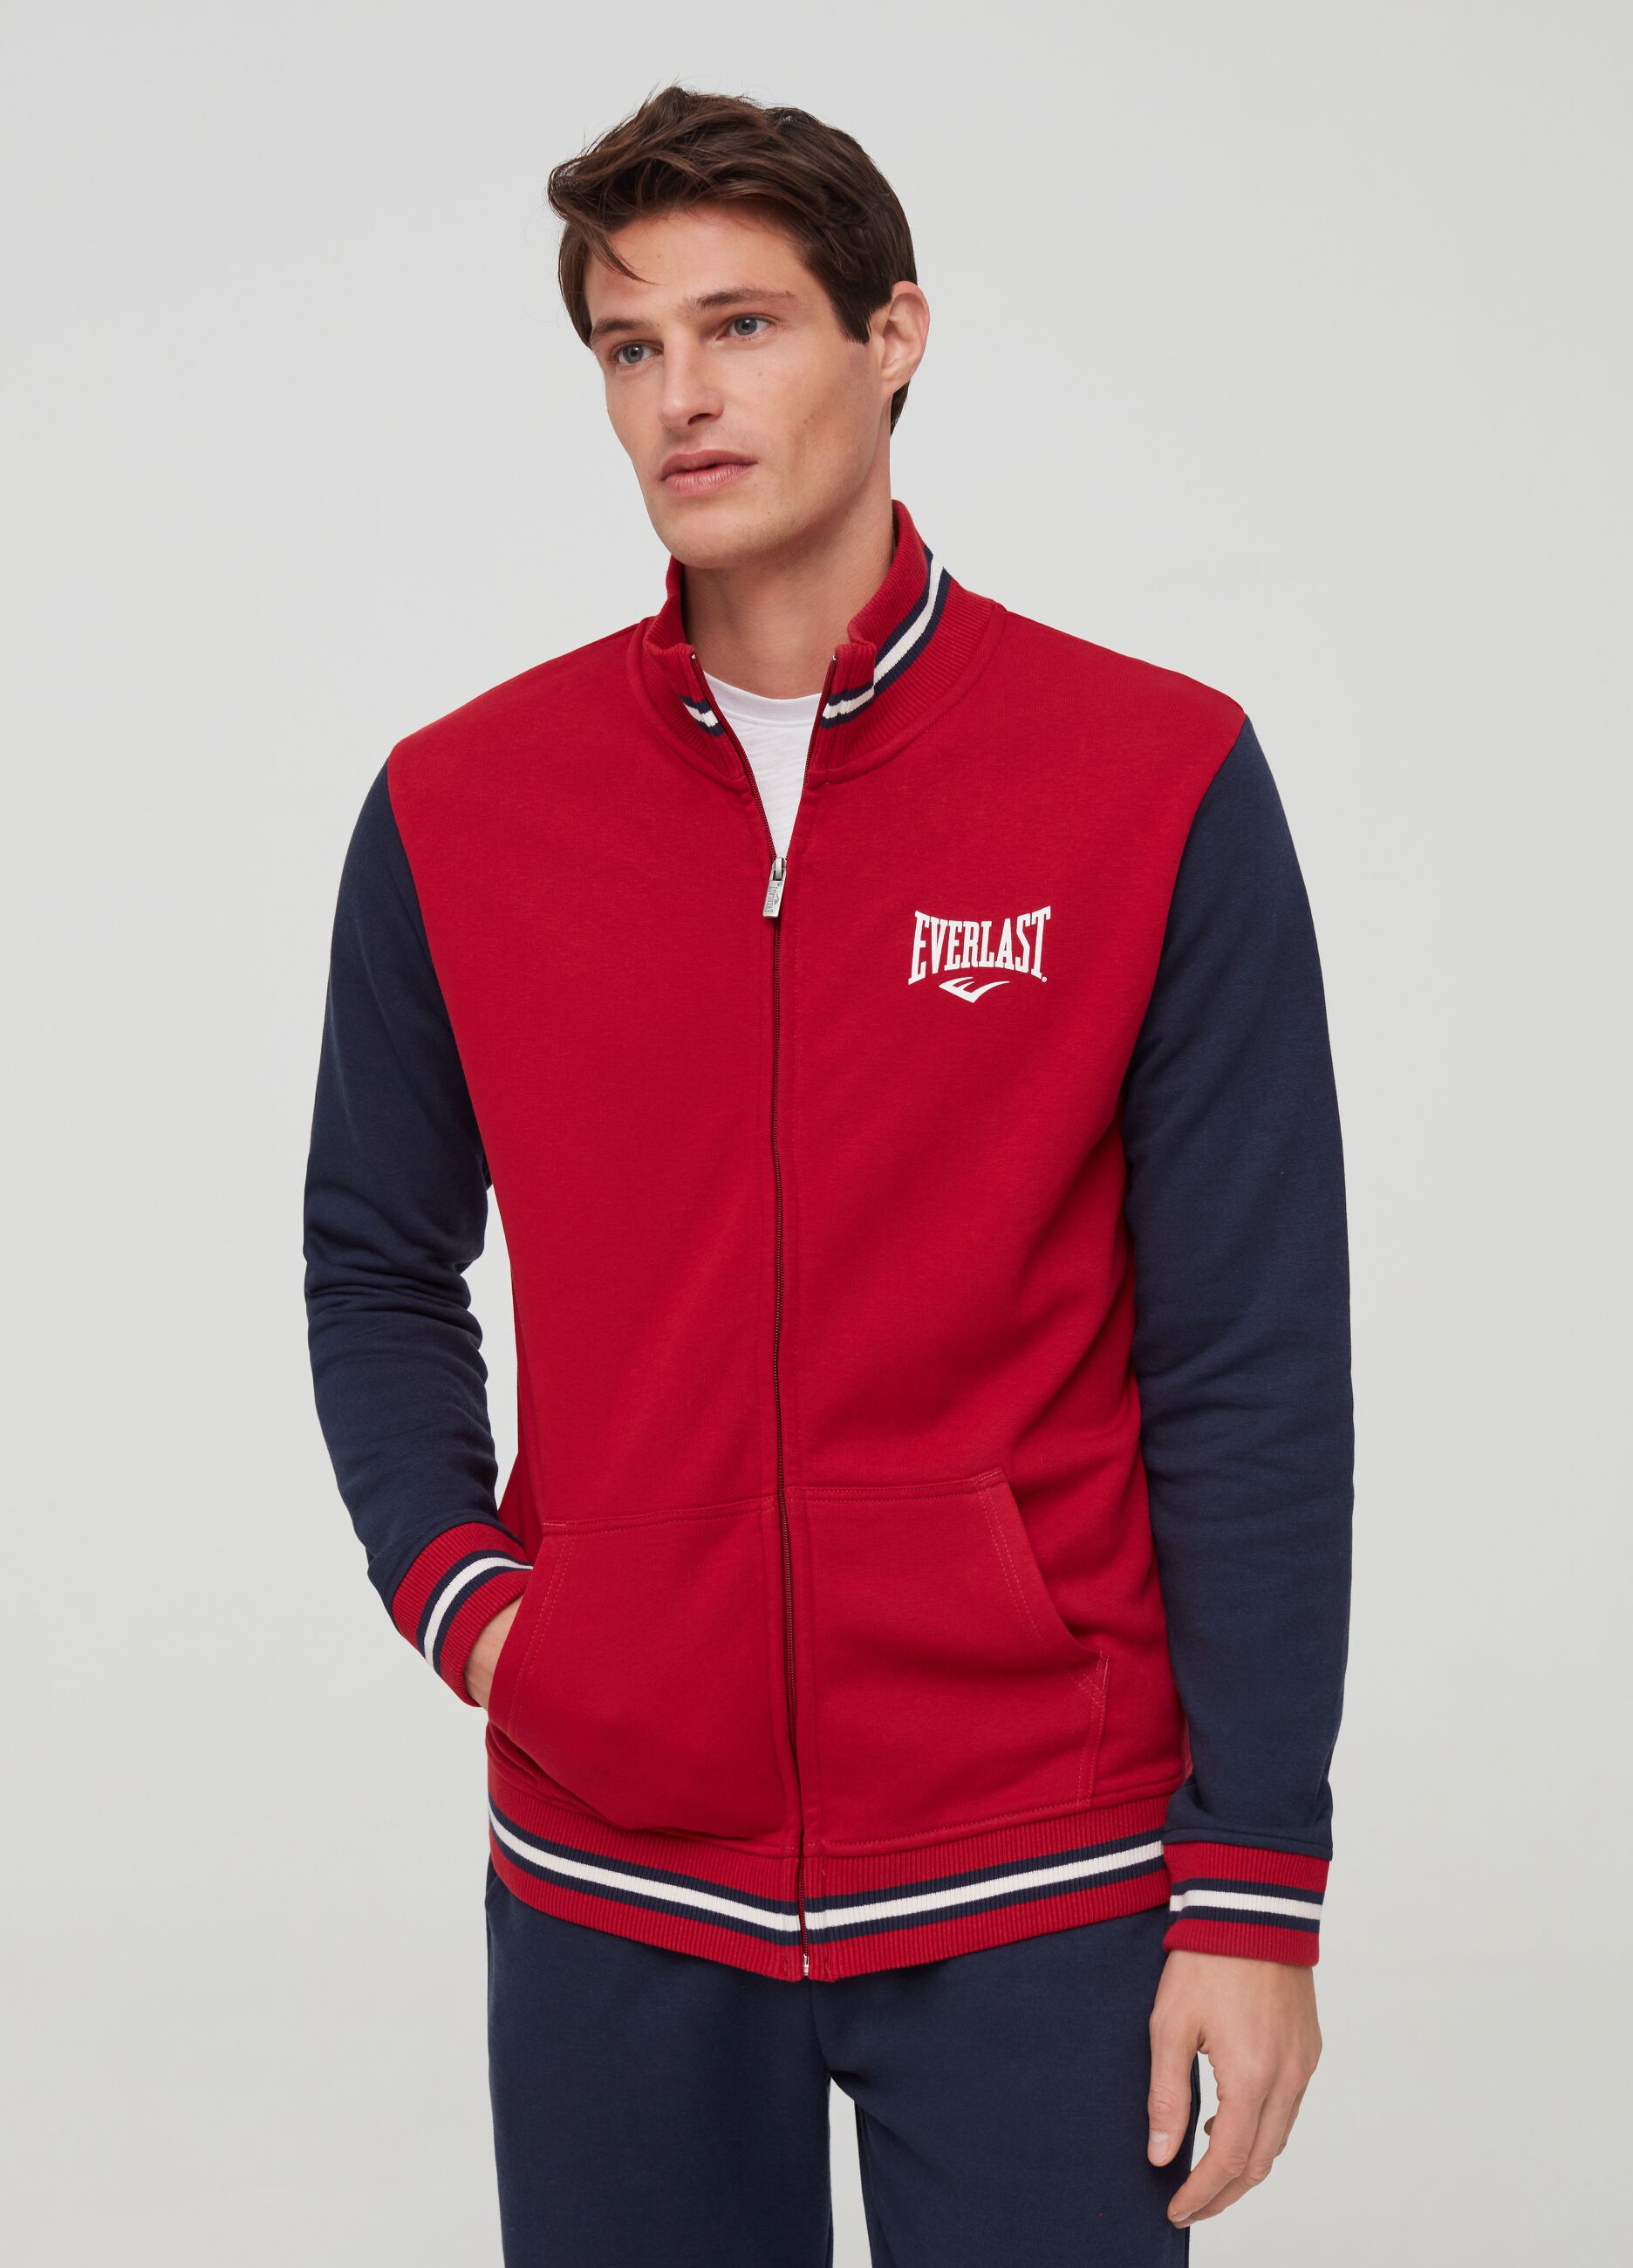 Fleece full-zip sweatshirt with Everlast print